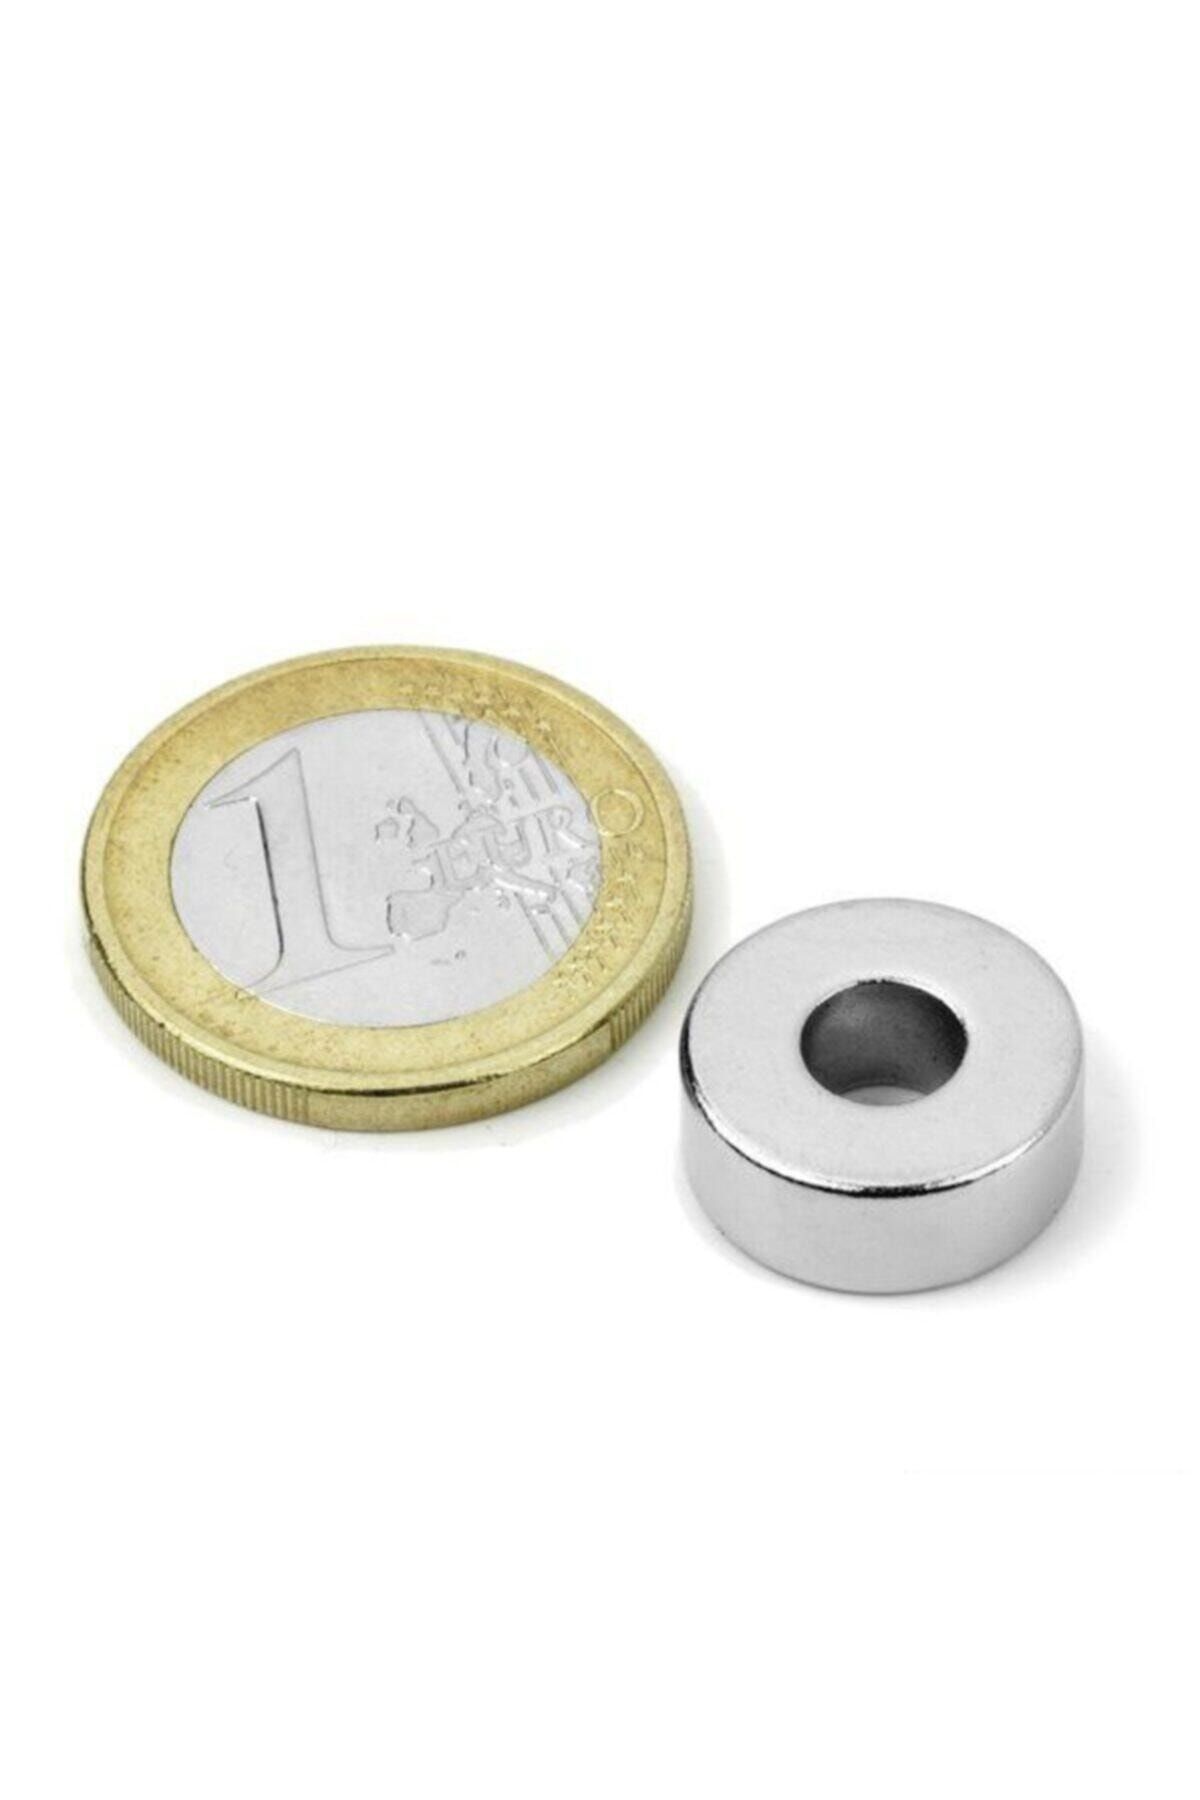 Dünya Magnet 1 Adet Çap 15mm X Del.çapı 5mm X Kalınlık 5mm Süper Güçlü Delikli Neodyum Mıknatıs